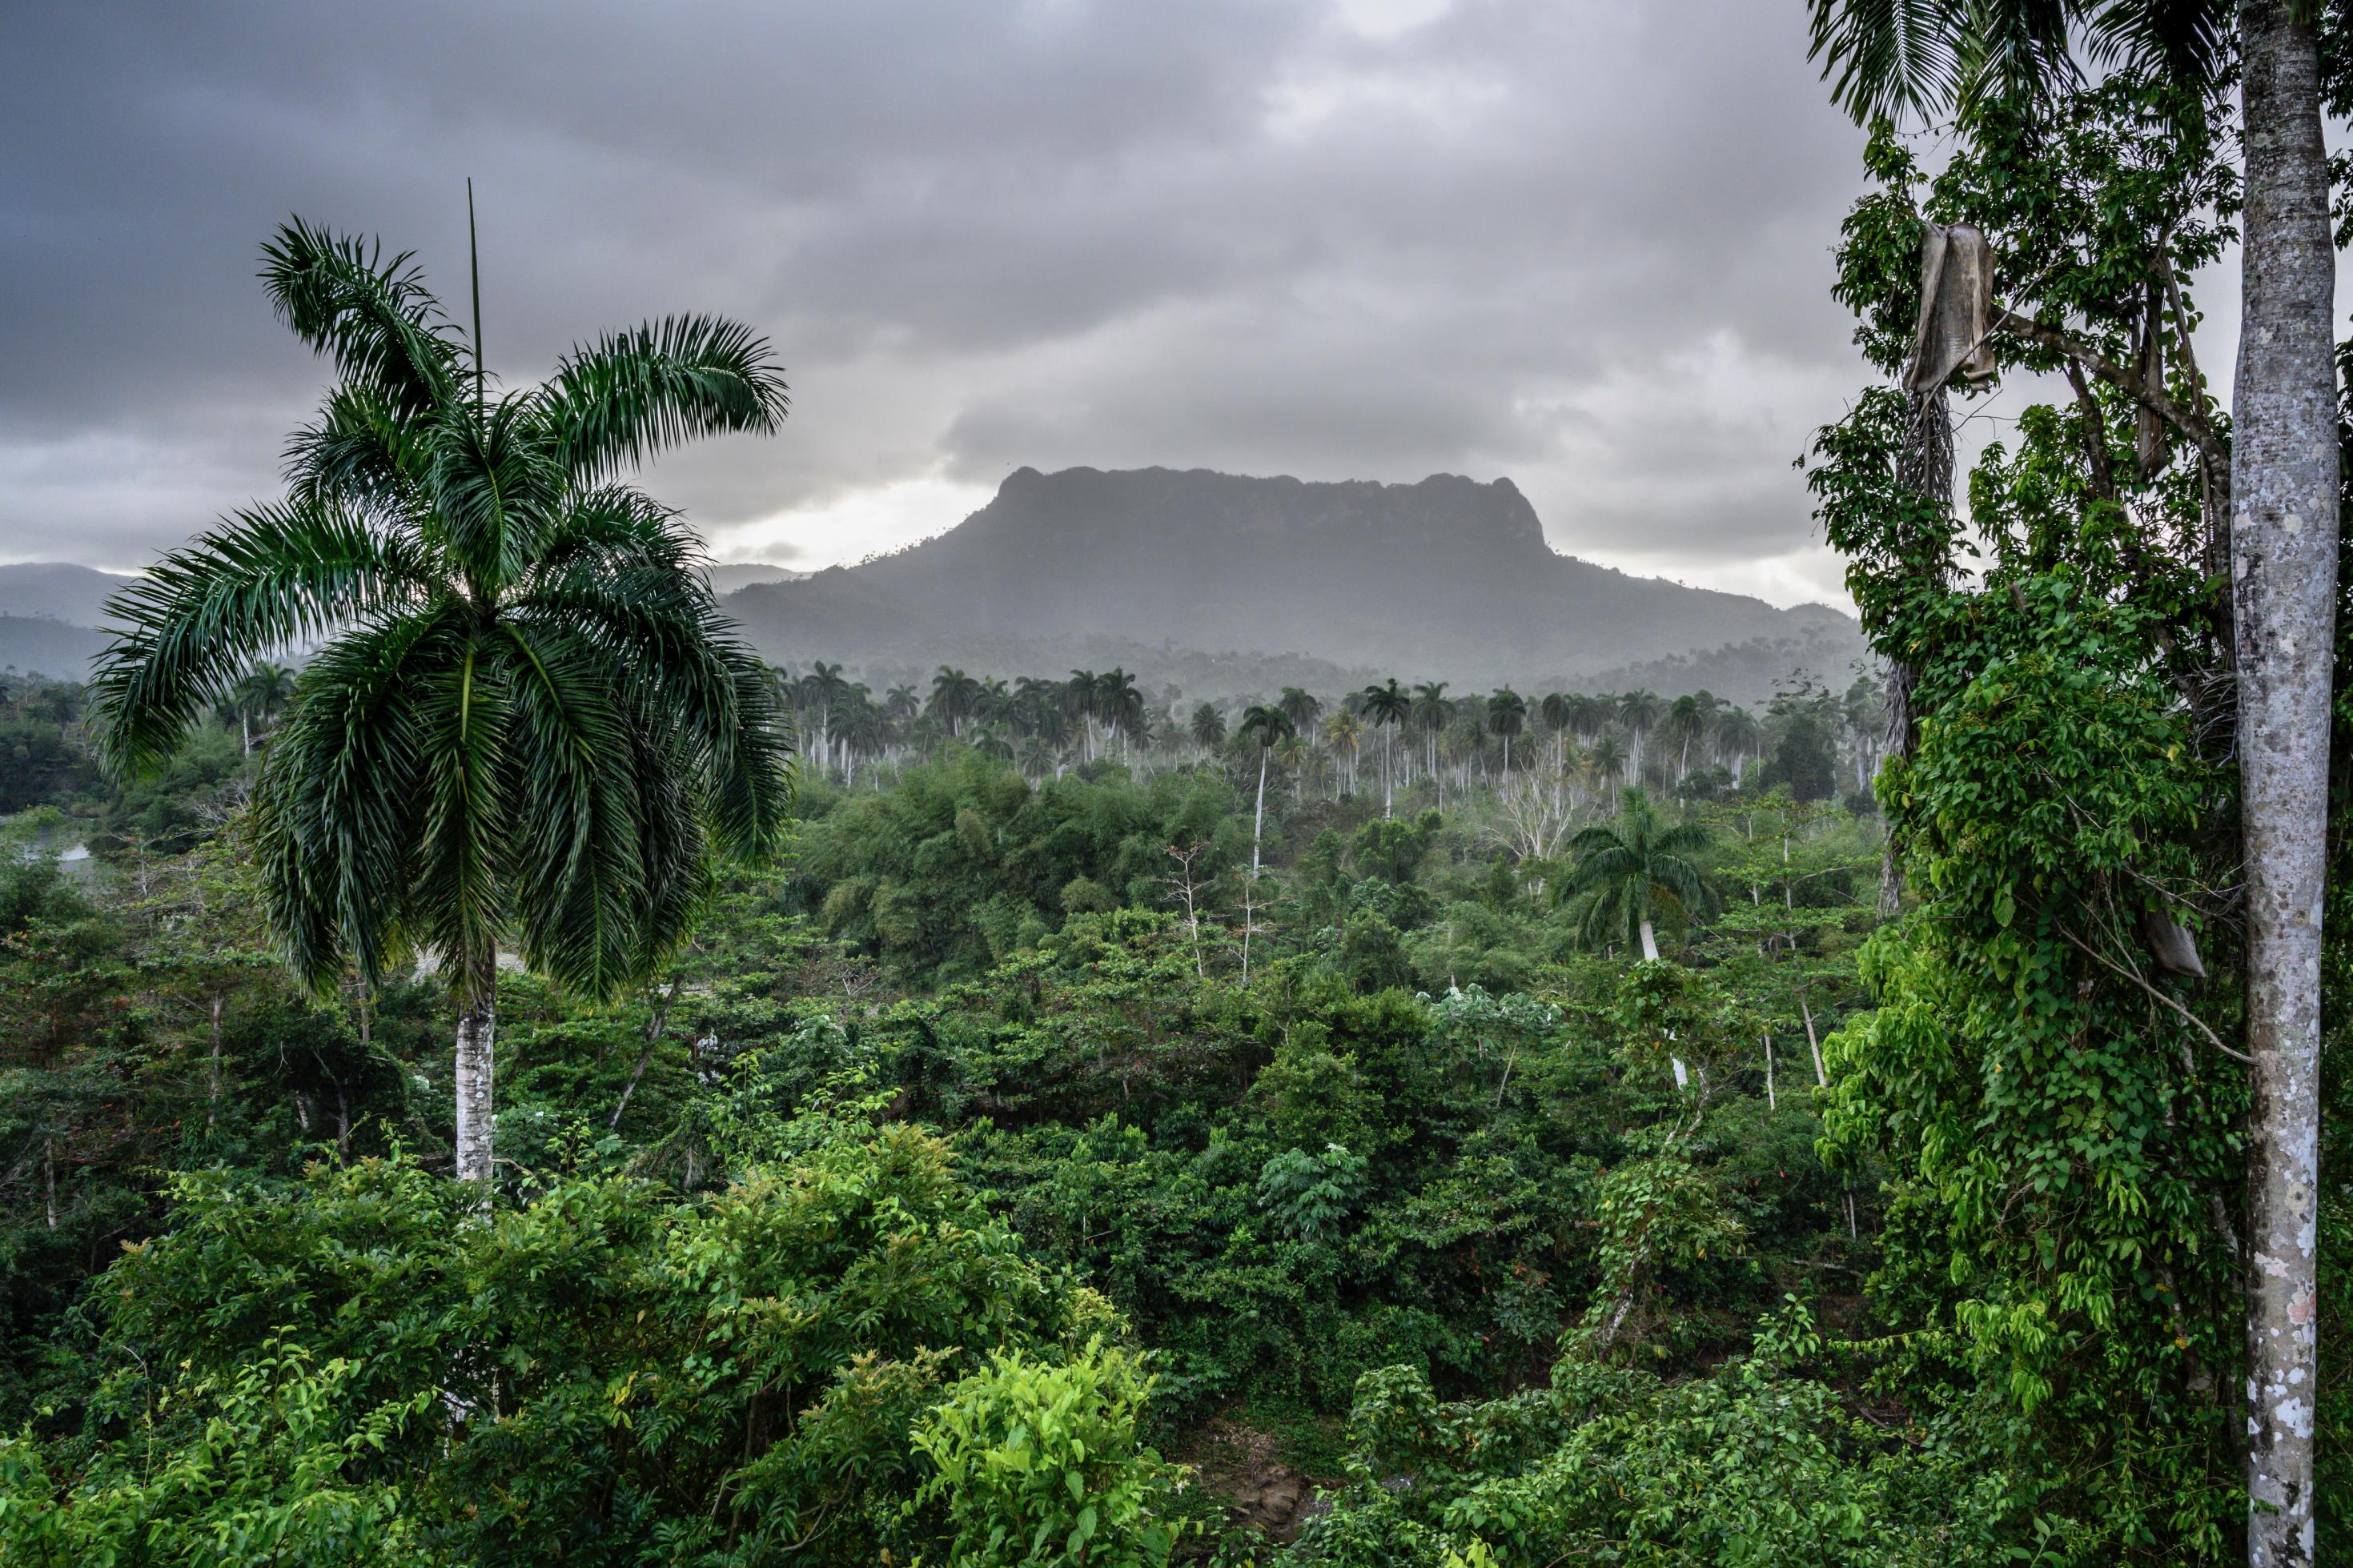 Blick auf einen quadratischen Berg, „El Yunque“ über dem graue Wolken hängen. Davor ein undurchdringliches Grün aus Sträuchern und Bäumen.